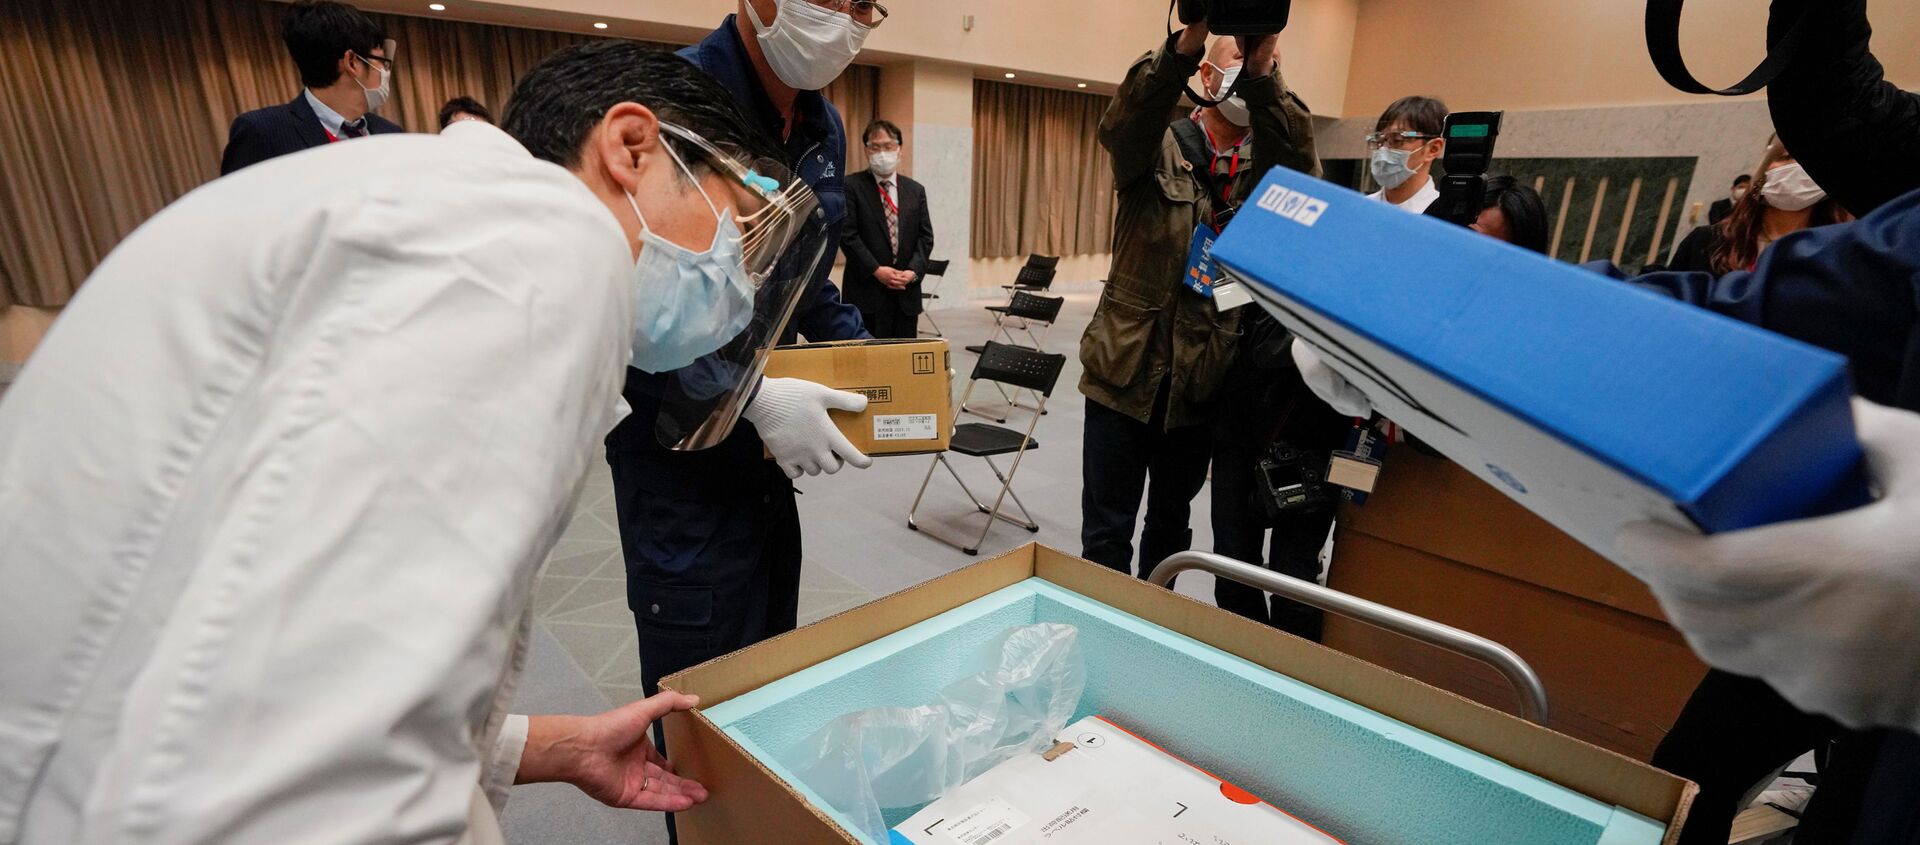 بدء حملة التطعيم واسعة النطاق ضد فيروس كورونا في اليابان، 17 فبراير 2021 - سبوتنيك عربي, 1920, 11.03.2021